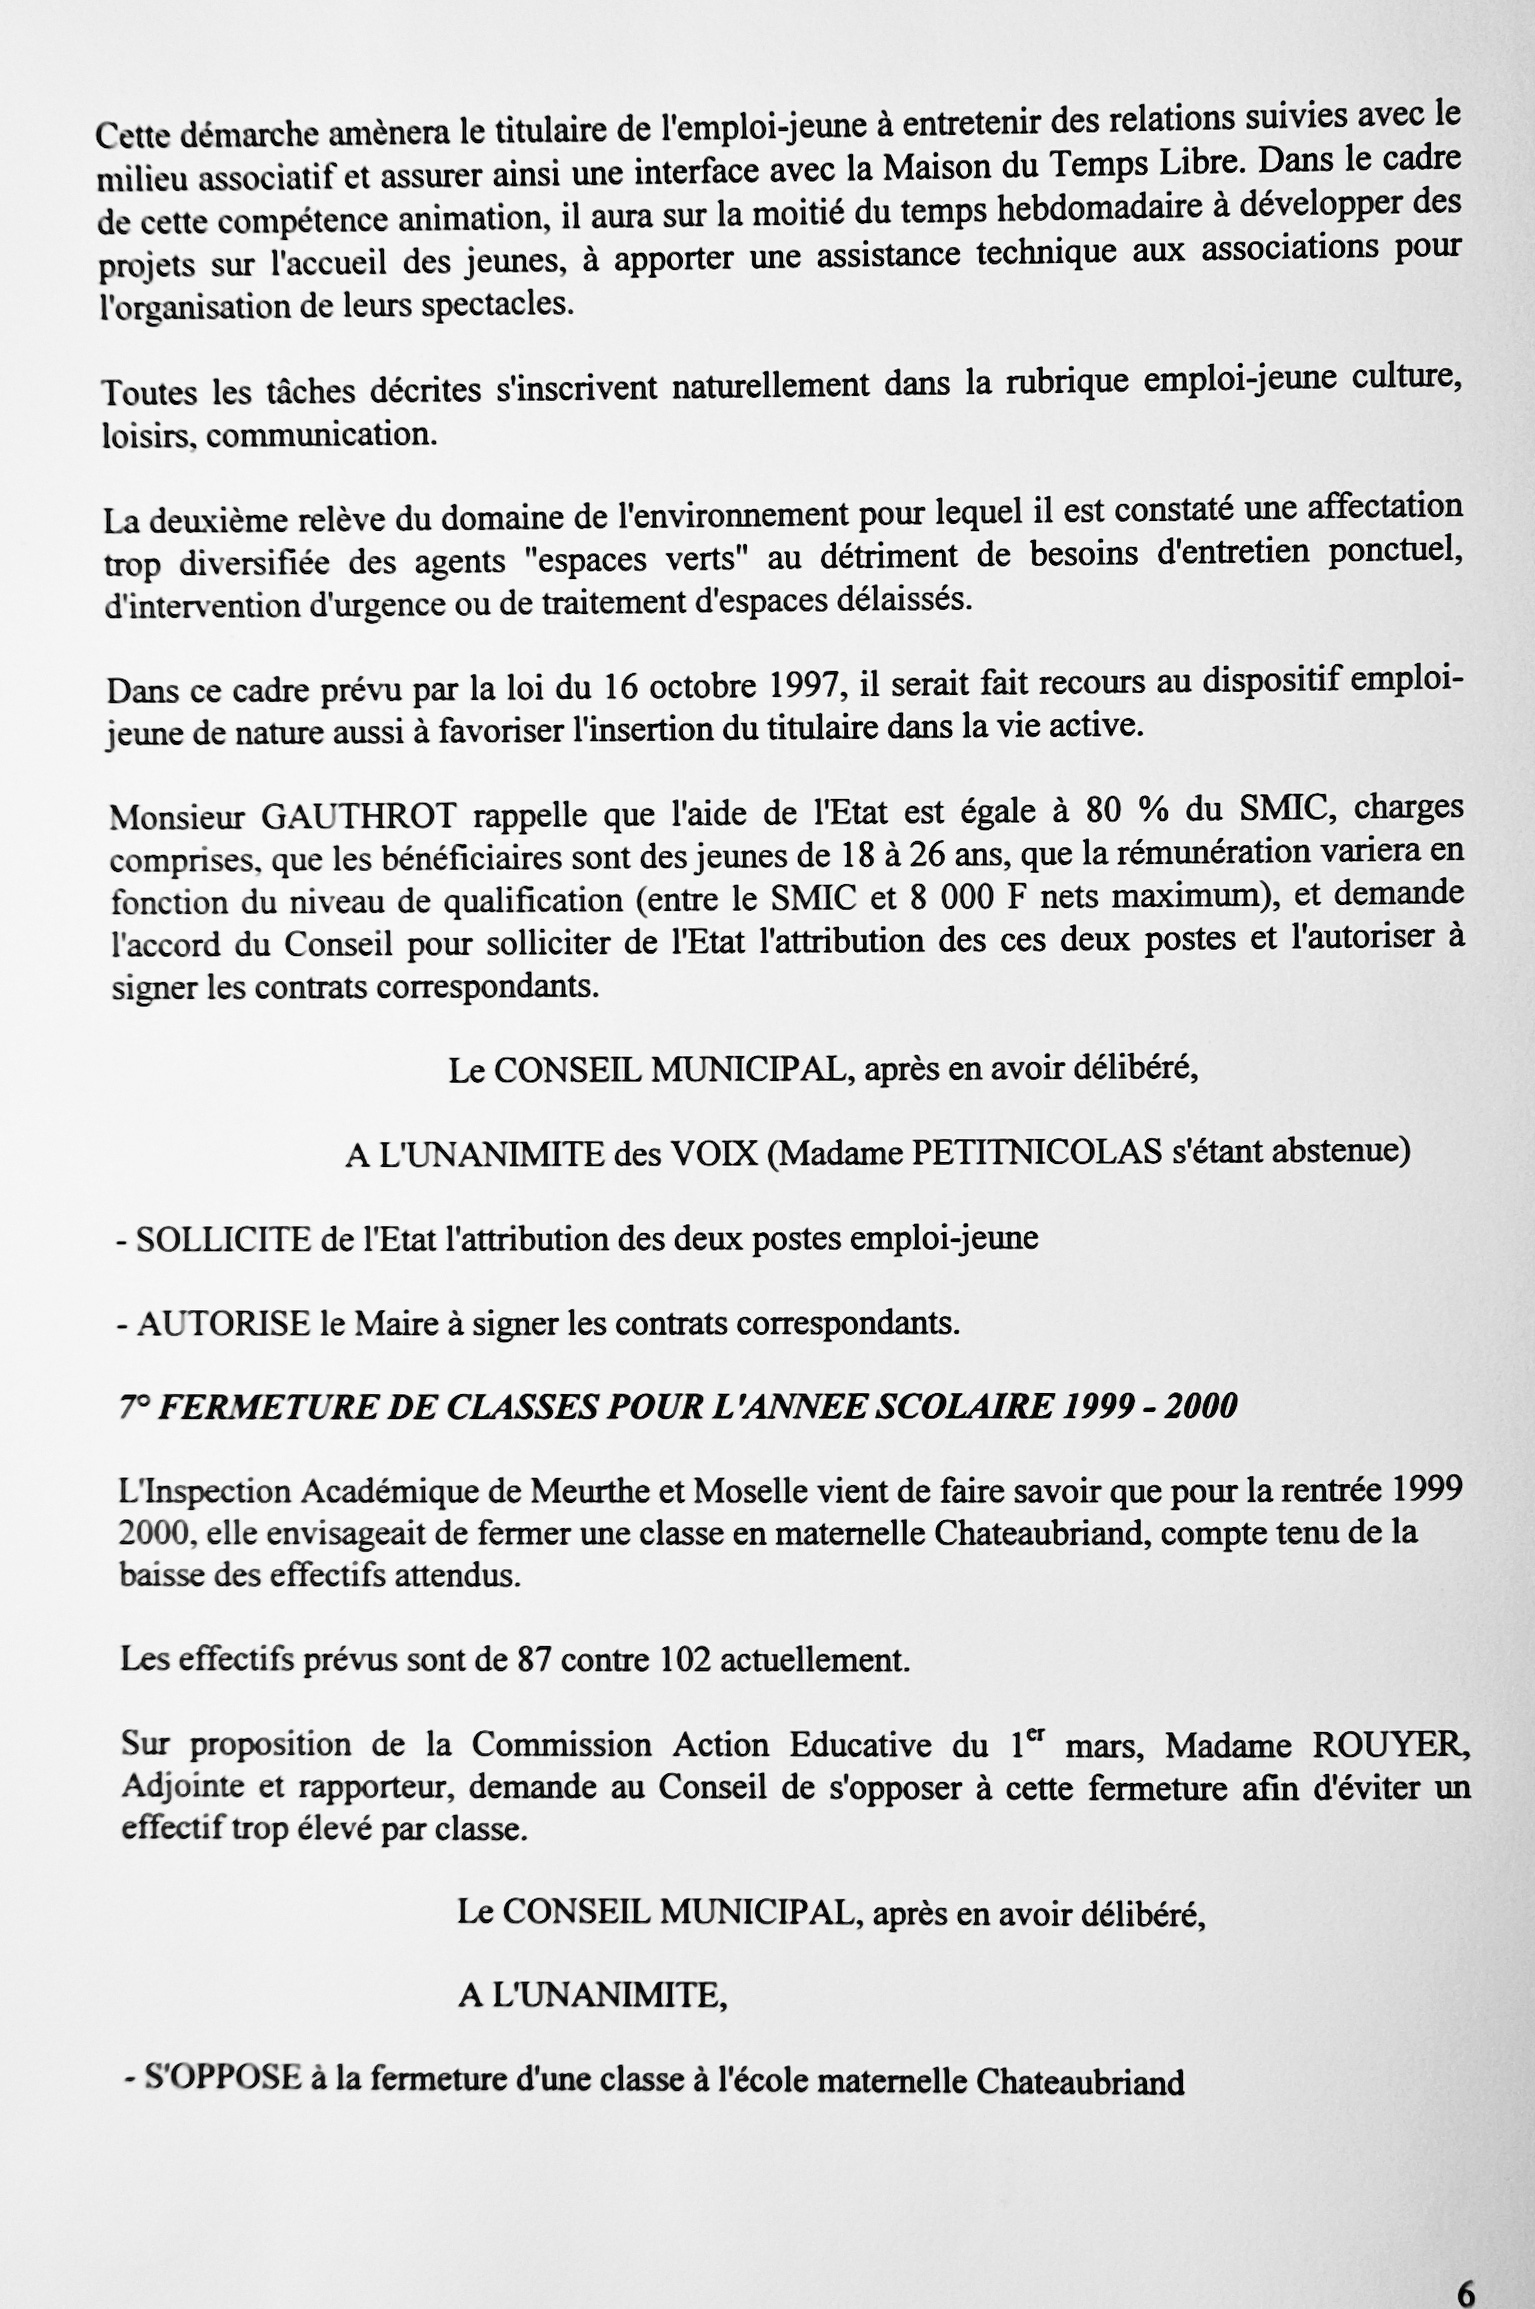 Feuillet_081B_1997-1999.jpg